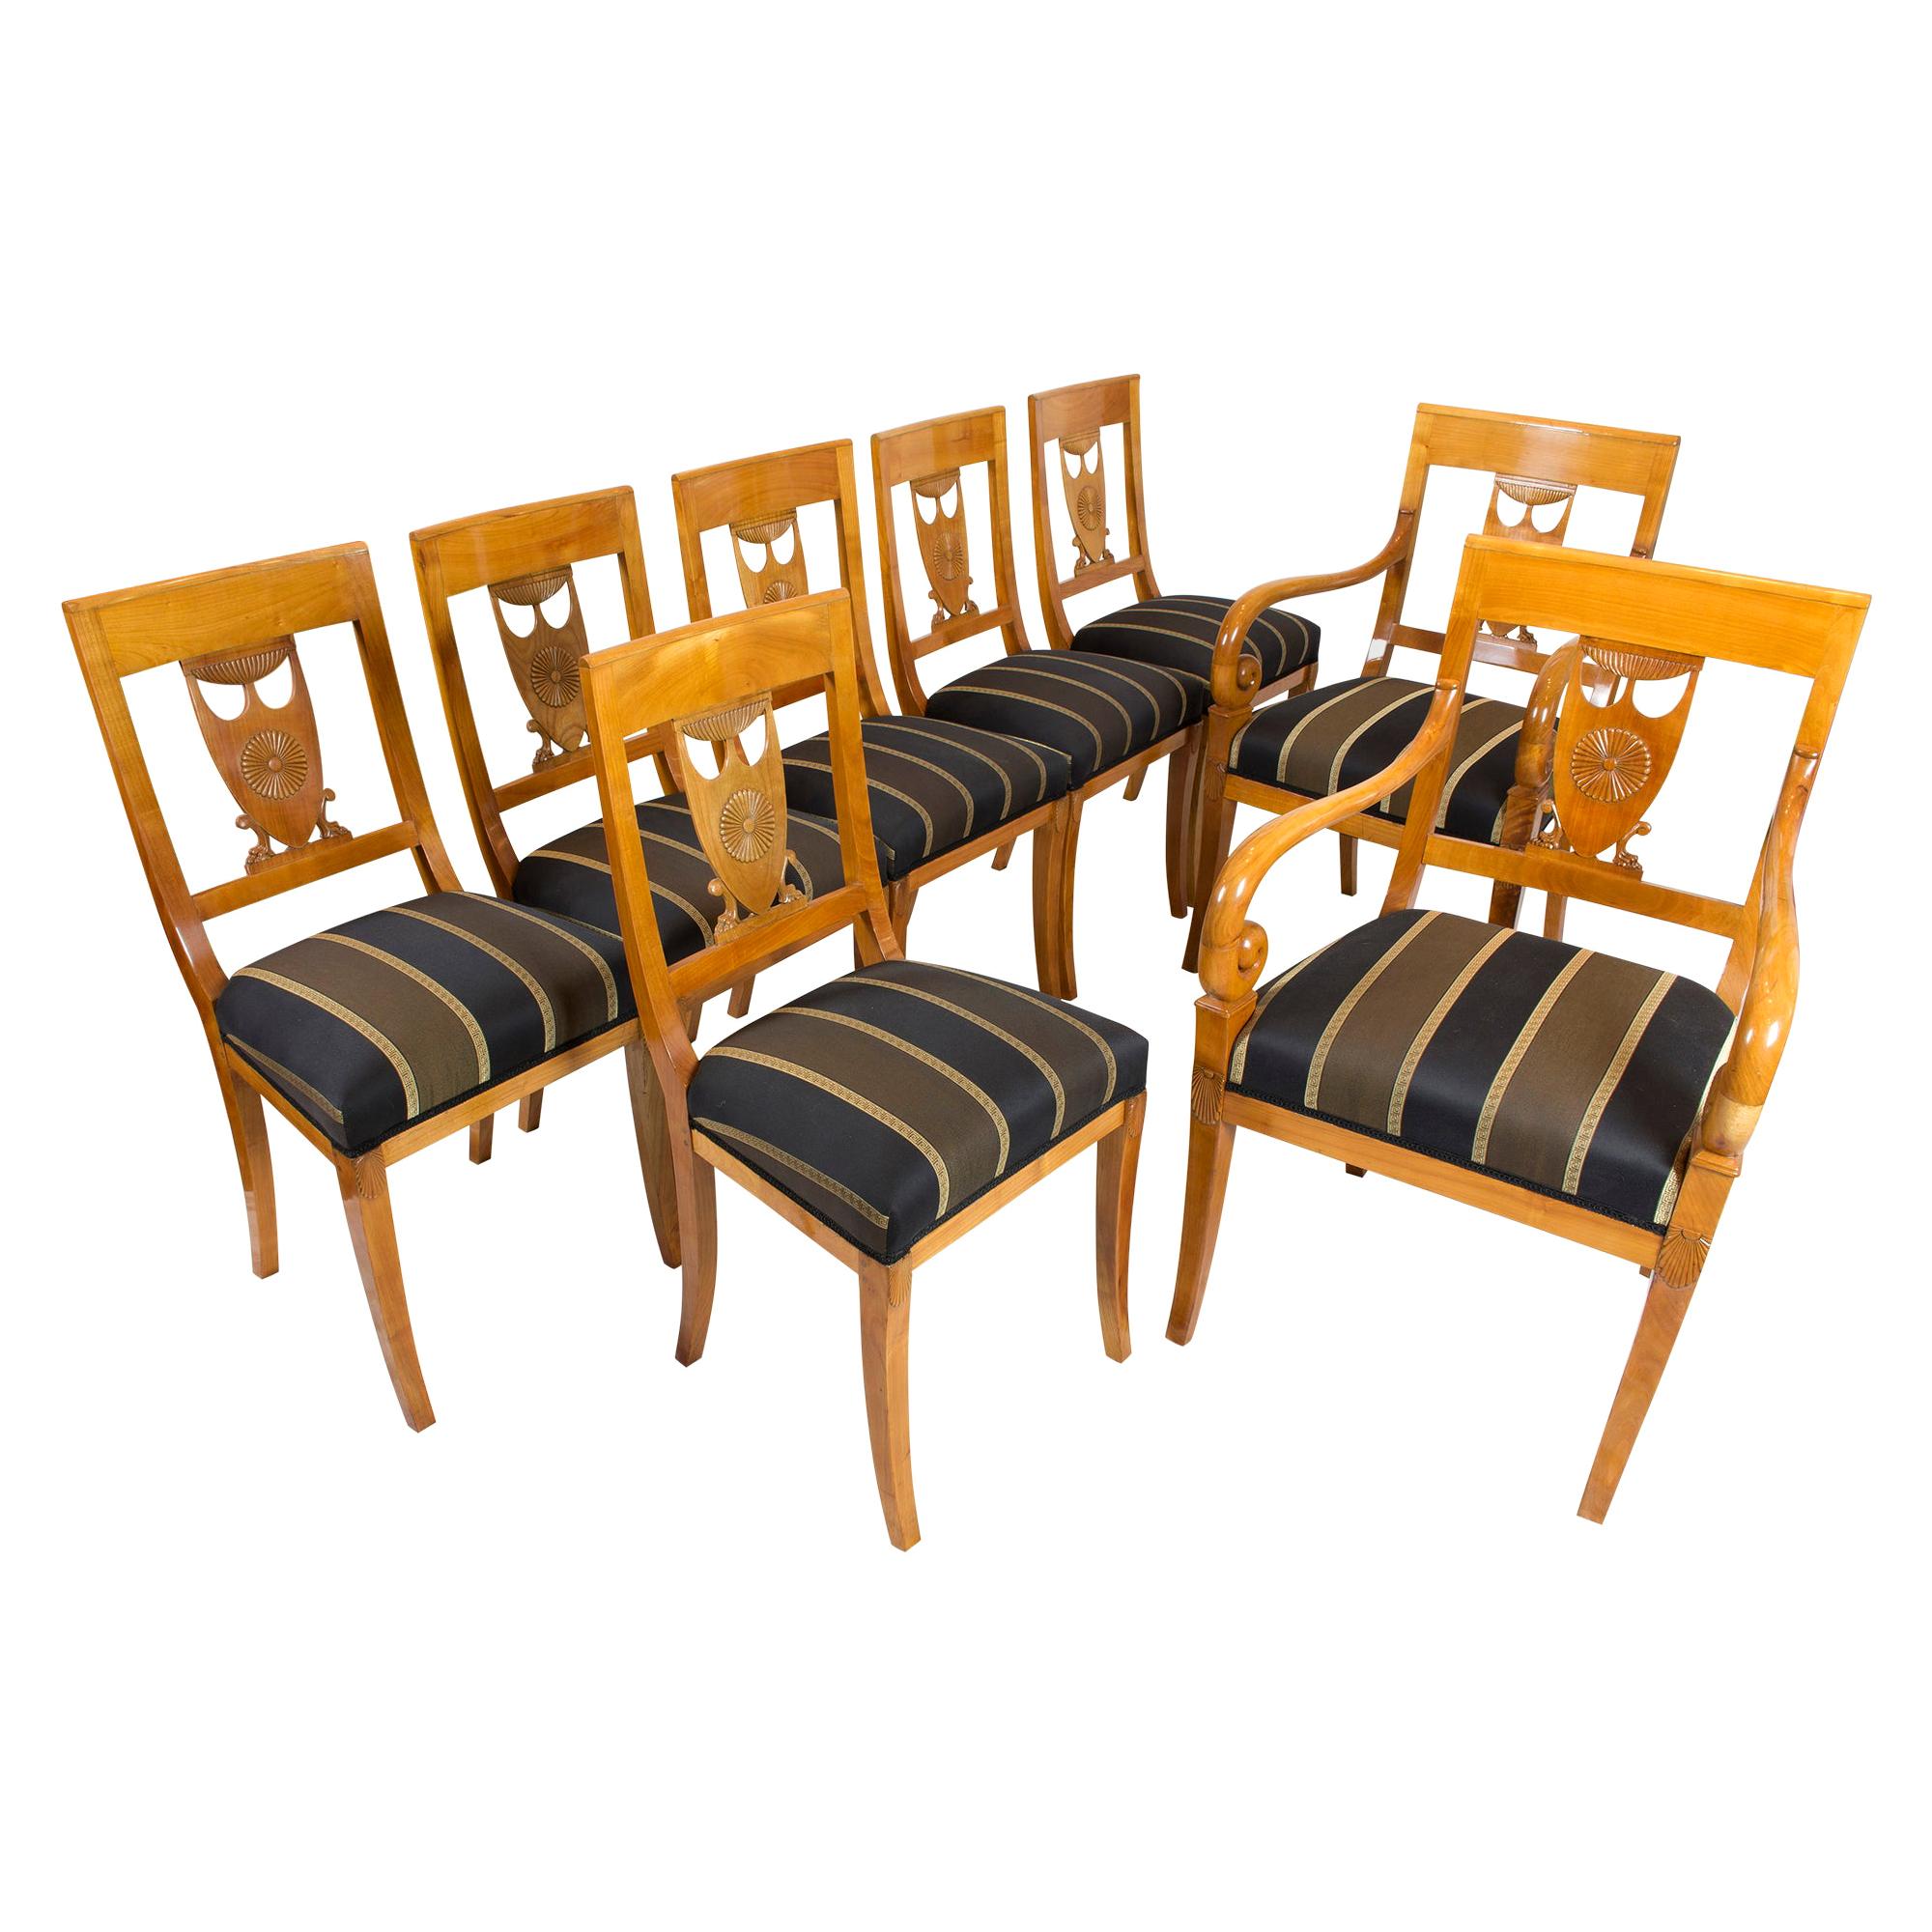 Frühes 19. Jahrhundert:: Empire-Sitzgruppe aus Kirschholz:: 2 Sessel und 6 Stühle